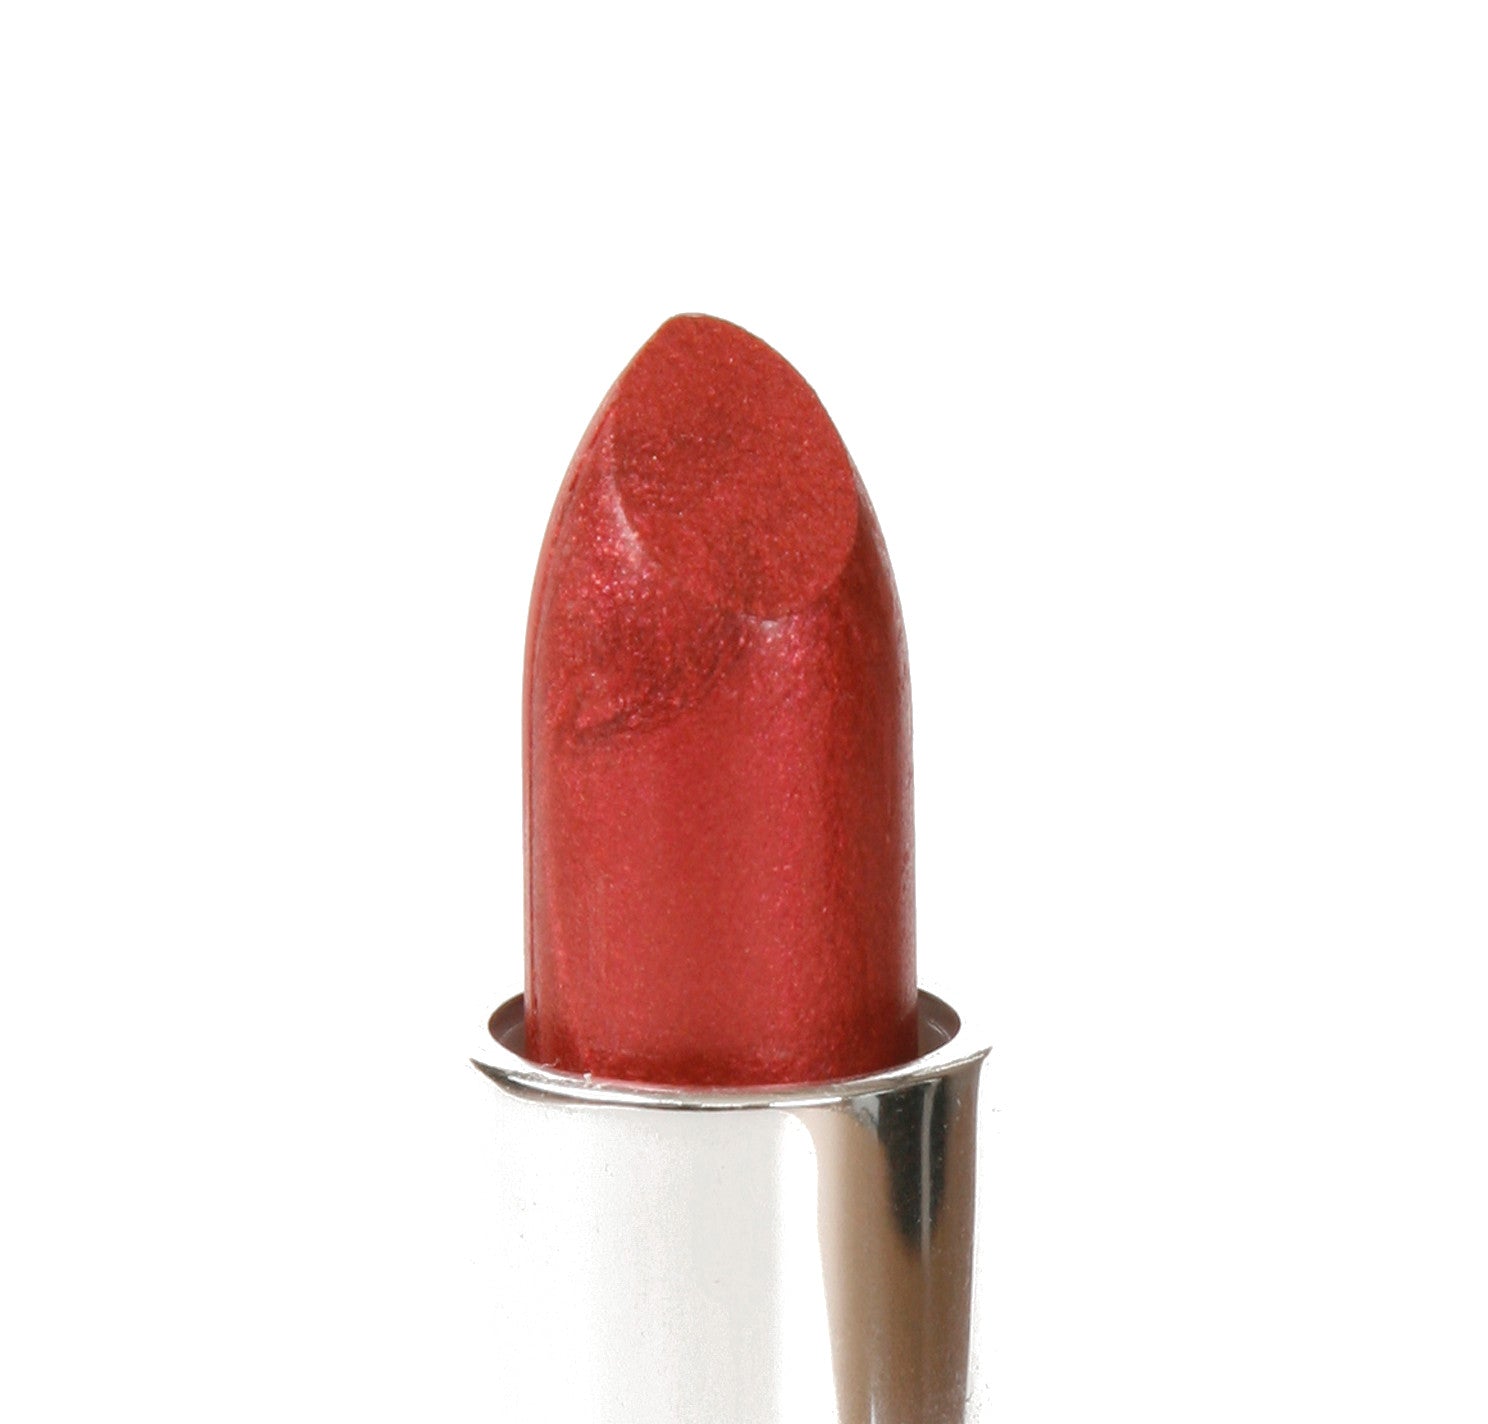 Pure Anada - Petal Perfect Lipstick